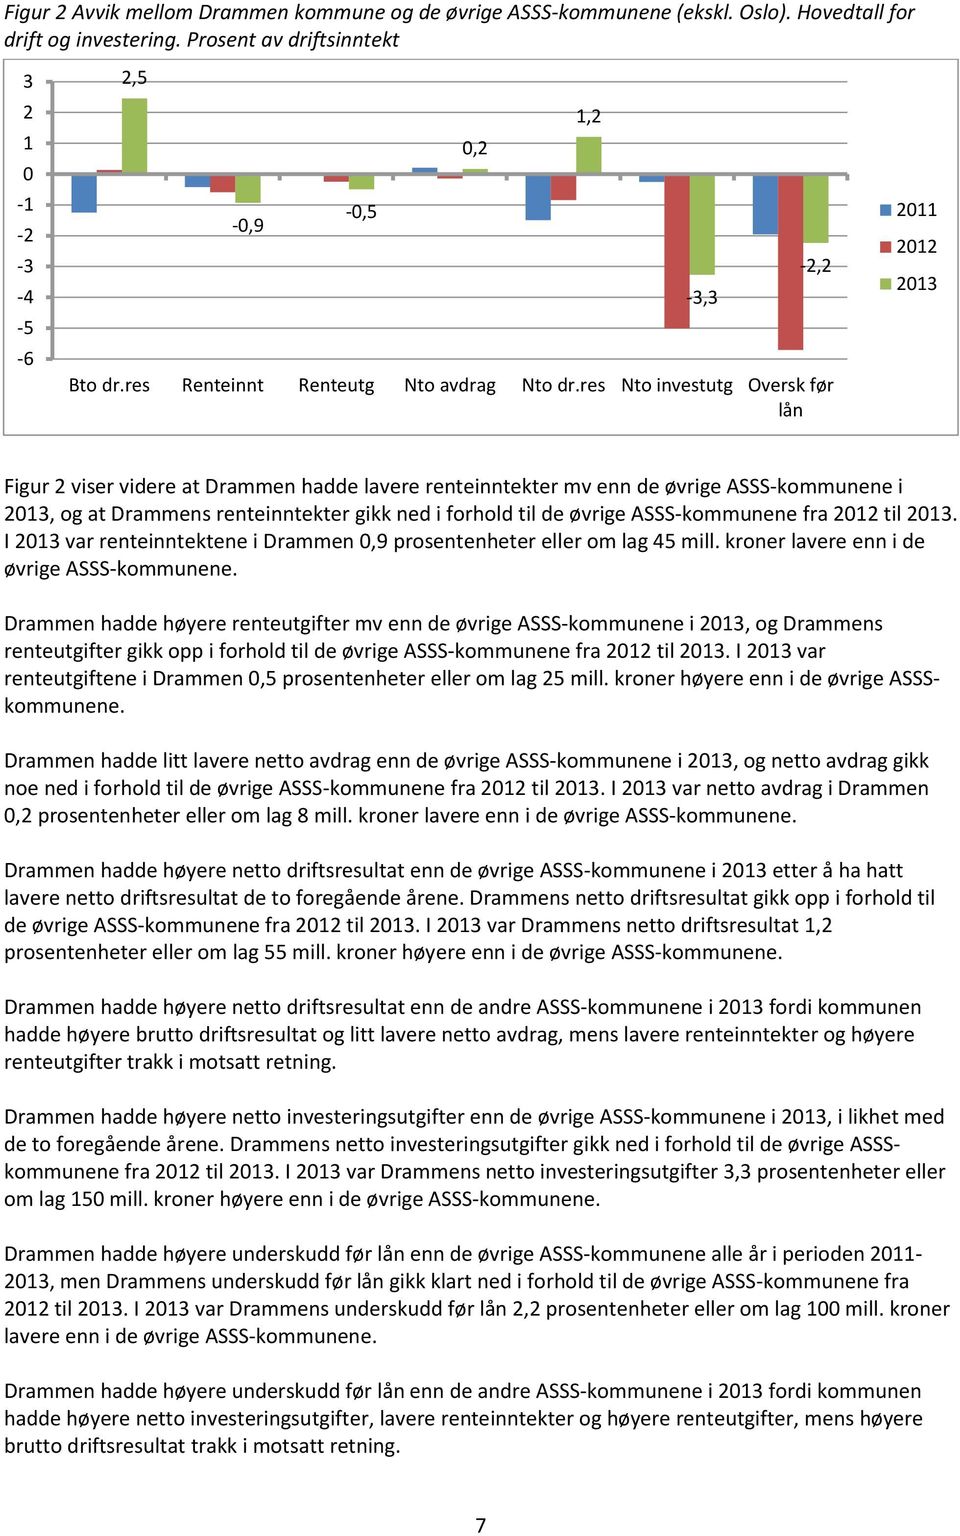 res Nto investutg Oversk før lån 0,2 1,2-3,3-2,2 2011 2012 2013 Figur 2 viser videre at Drammen hadde lavere renteinntekter mv enn de øvrige ASSS-kommunene i 2013, og at Drammens renteinntekter gikk